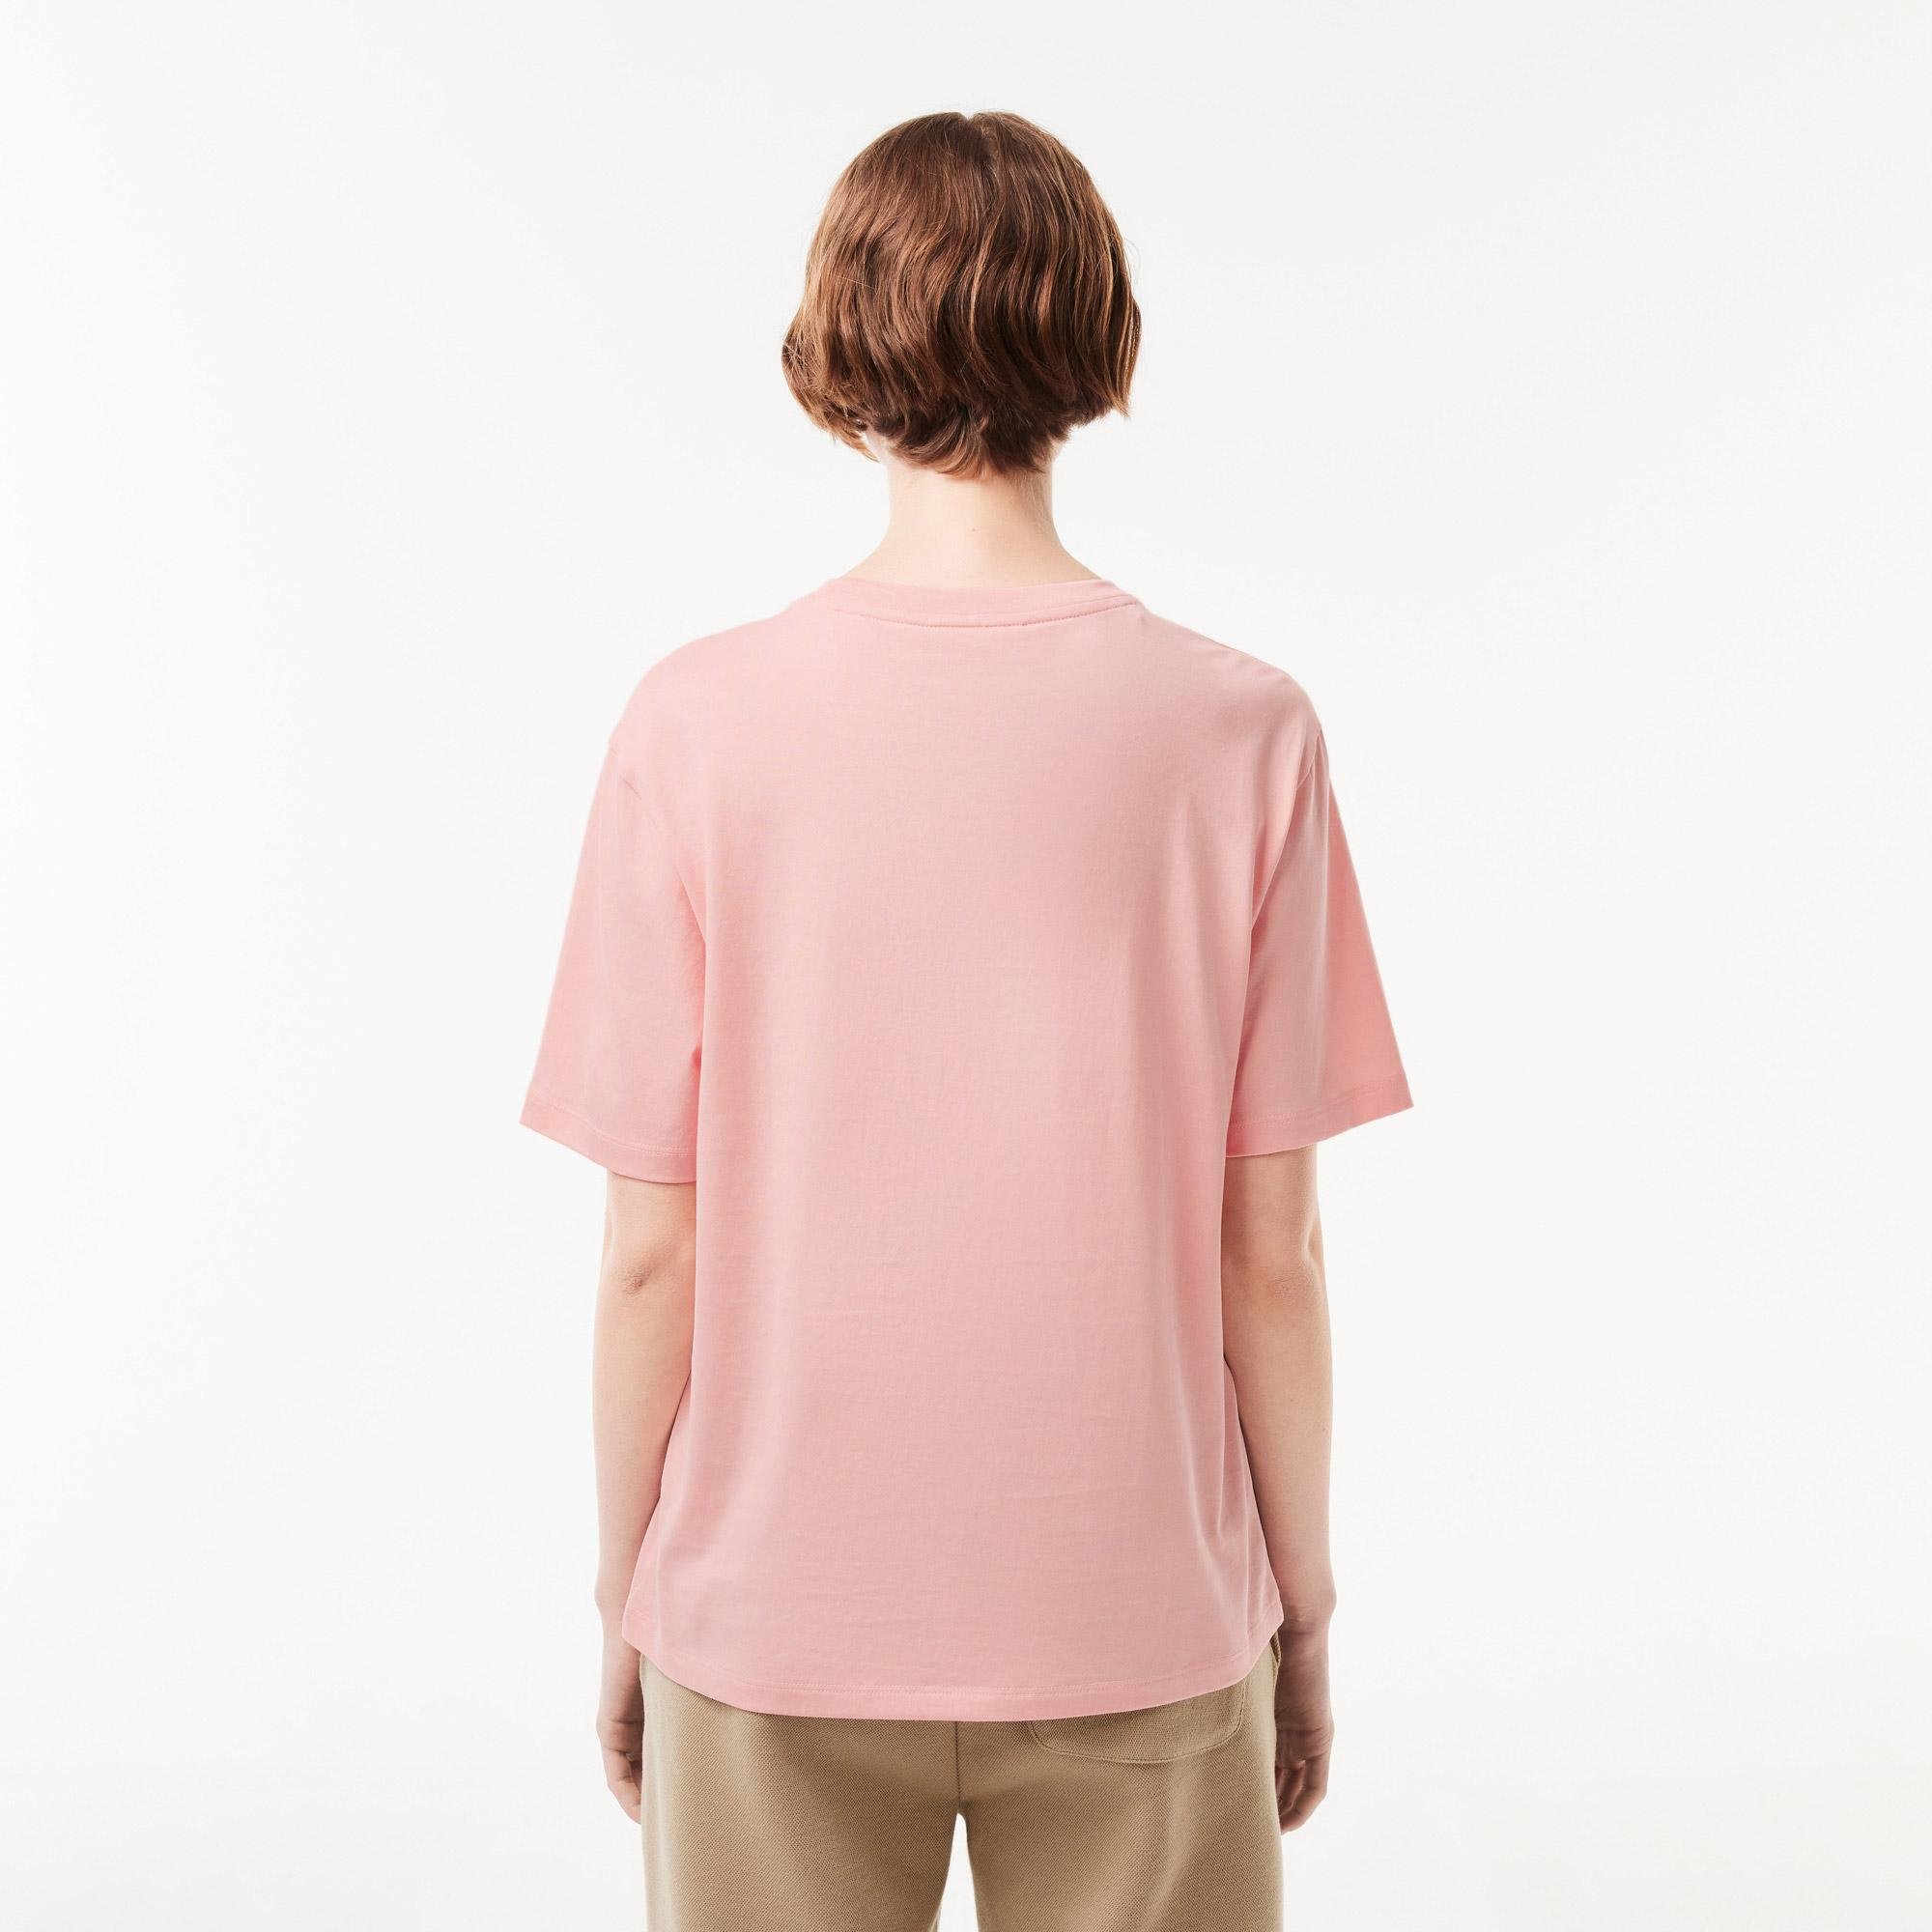 Lacoste Women’s Crew Neck Premium Cotton T-shirt